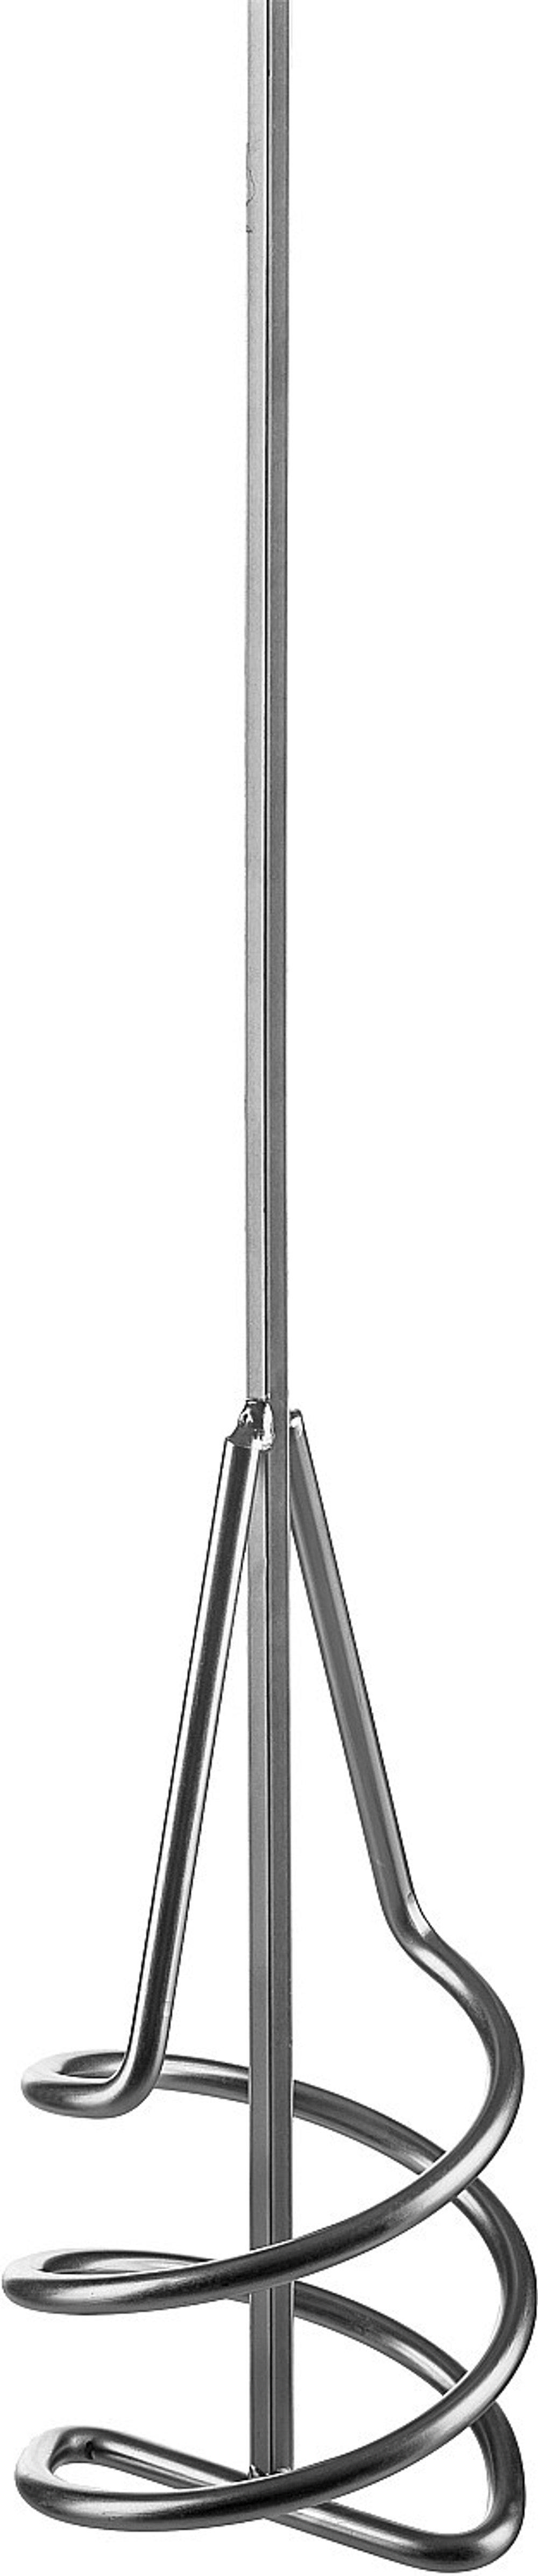 Миксер ЗУБР ″Профессионал″ для песчано-гравийных смесей, шестигранный хвостовик, оцинкованный, на подвеске, 120х580мм